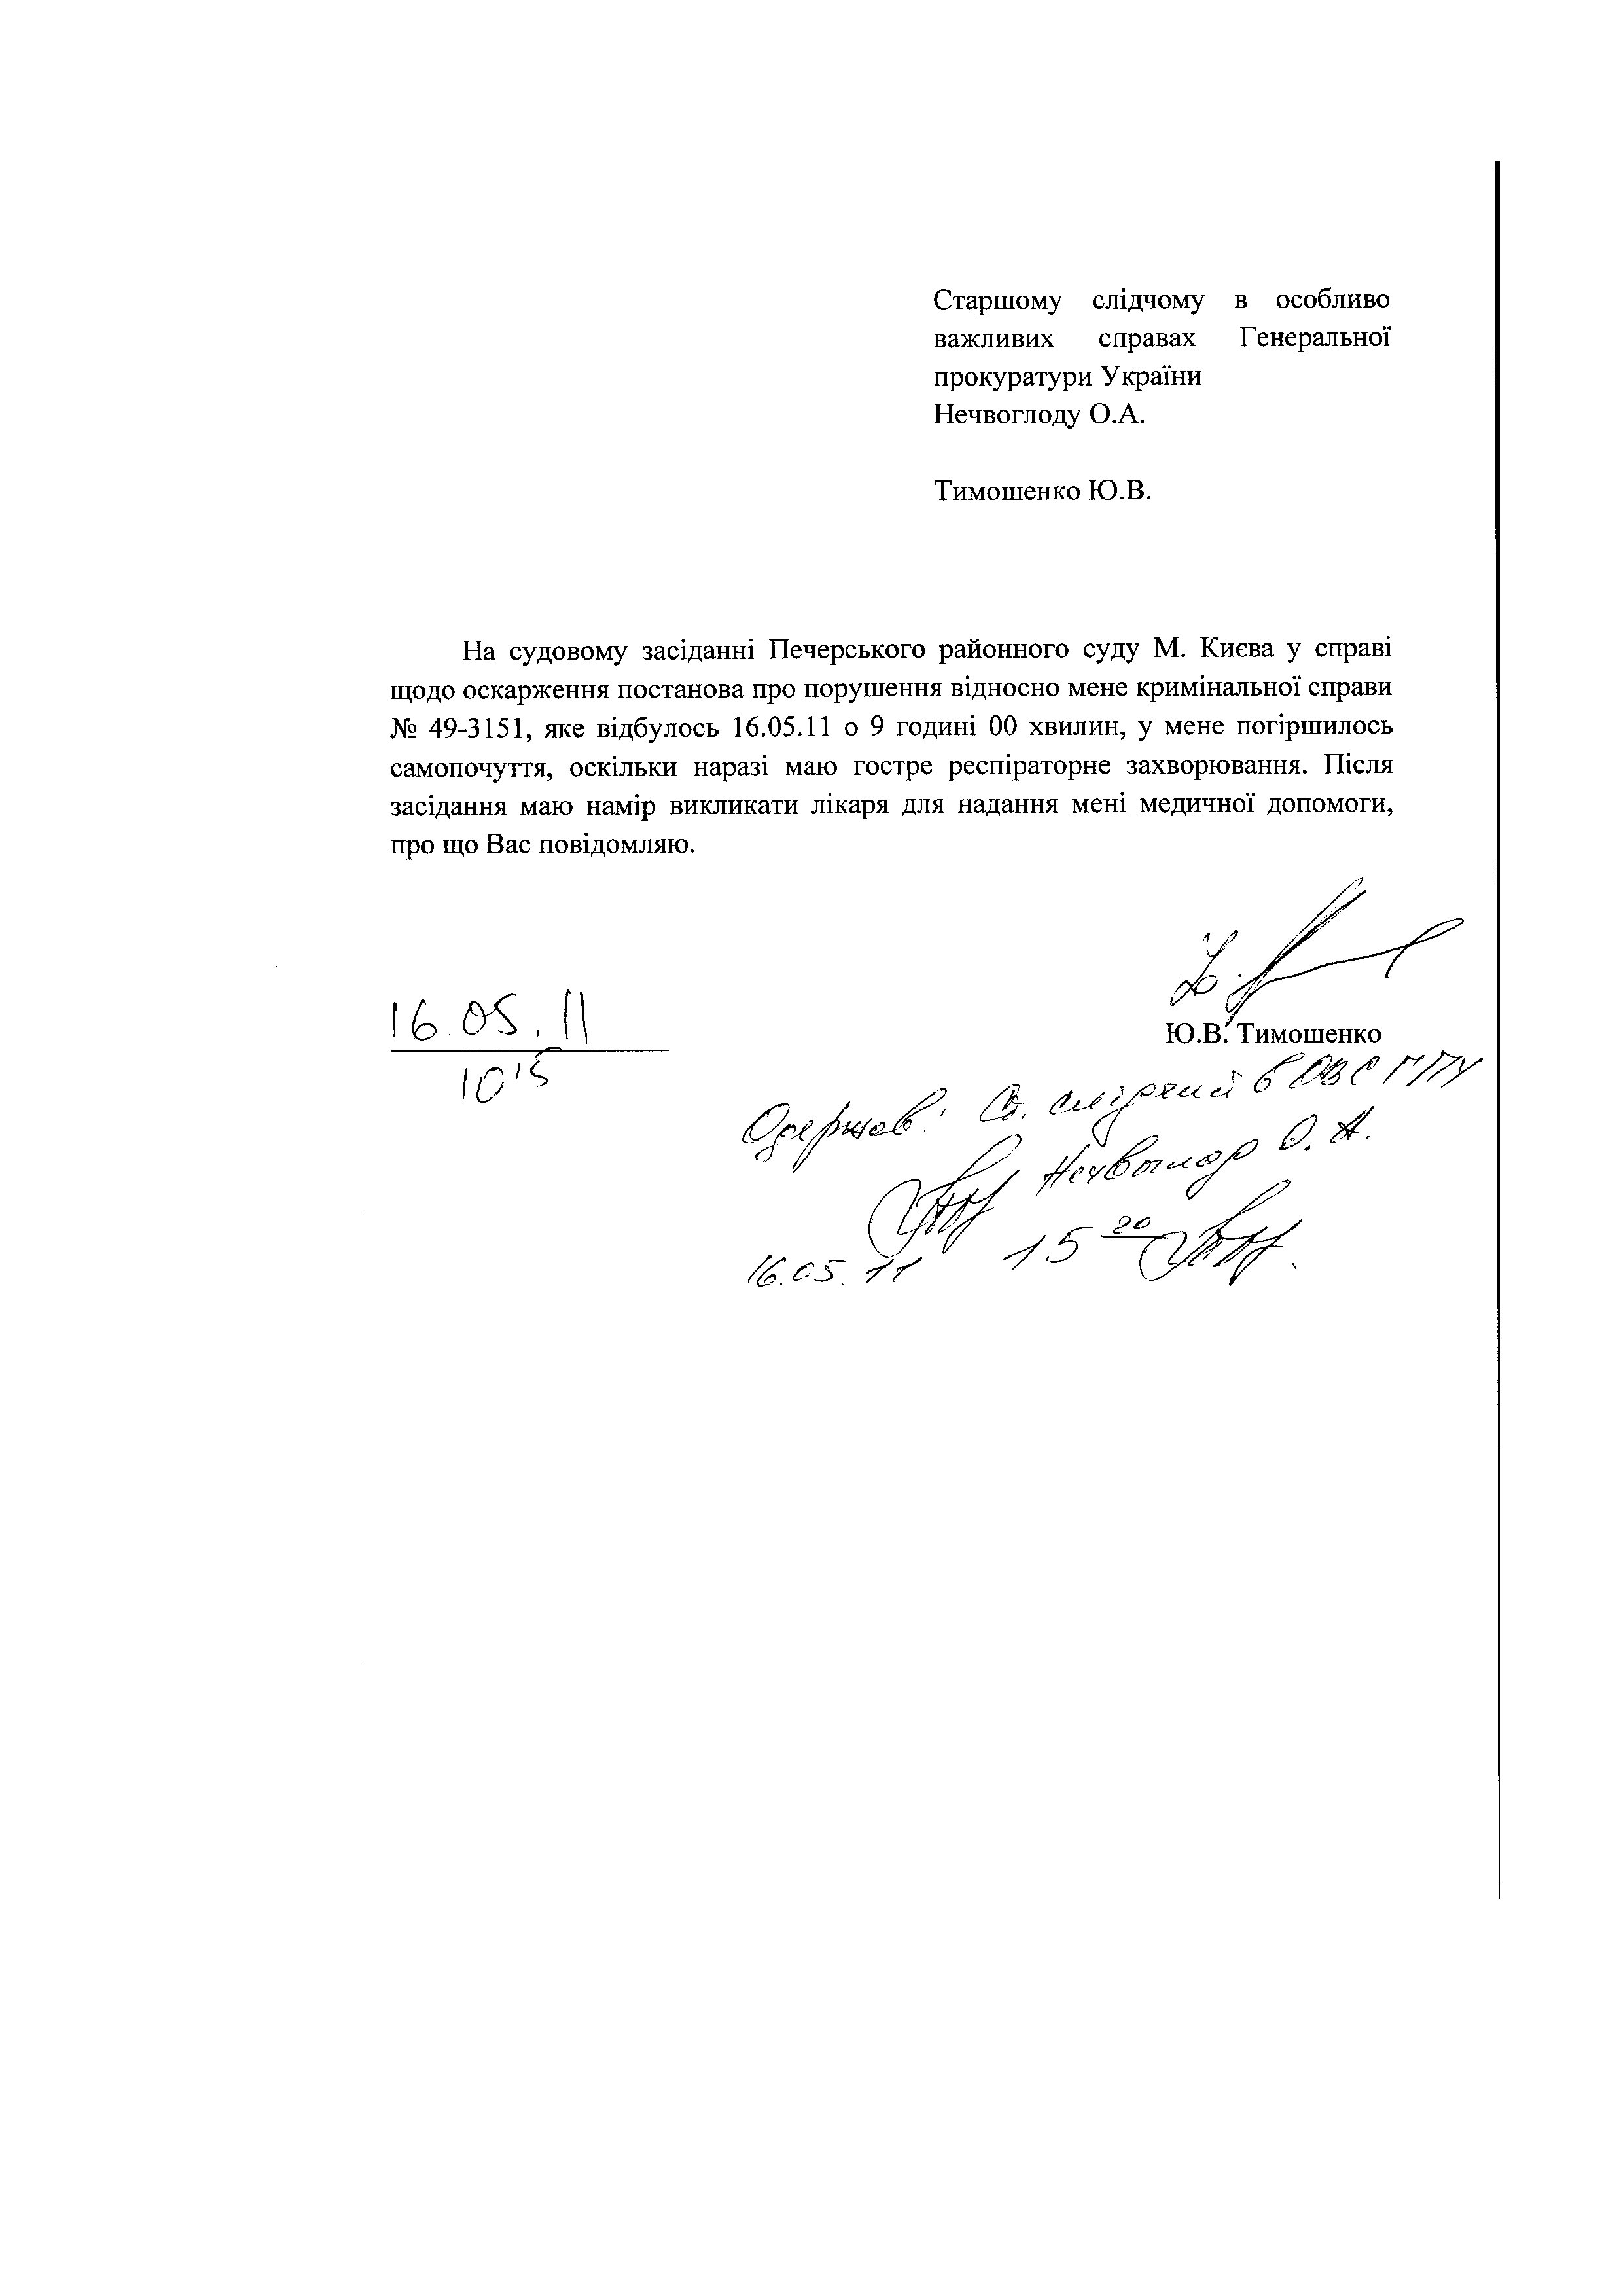 Повістки до ГПУ Тимошенко Ю.В._page003.jpg